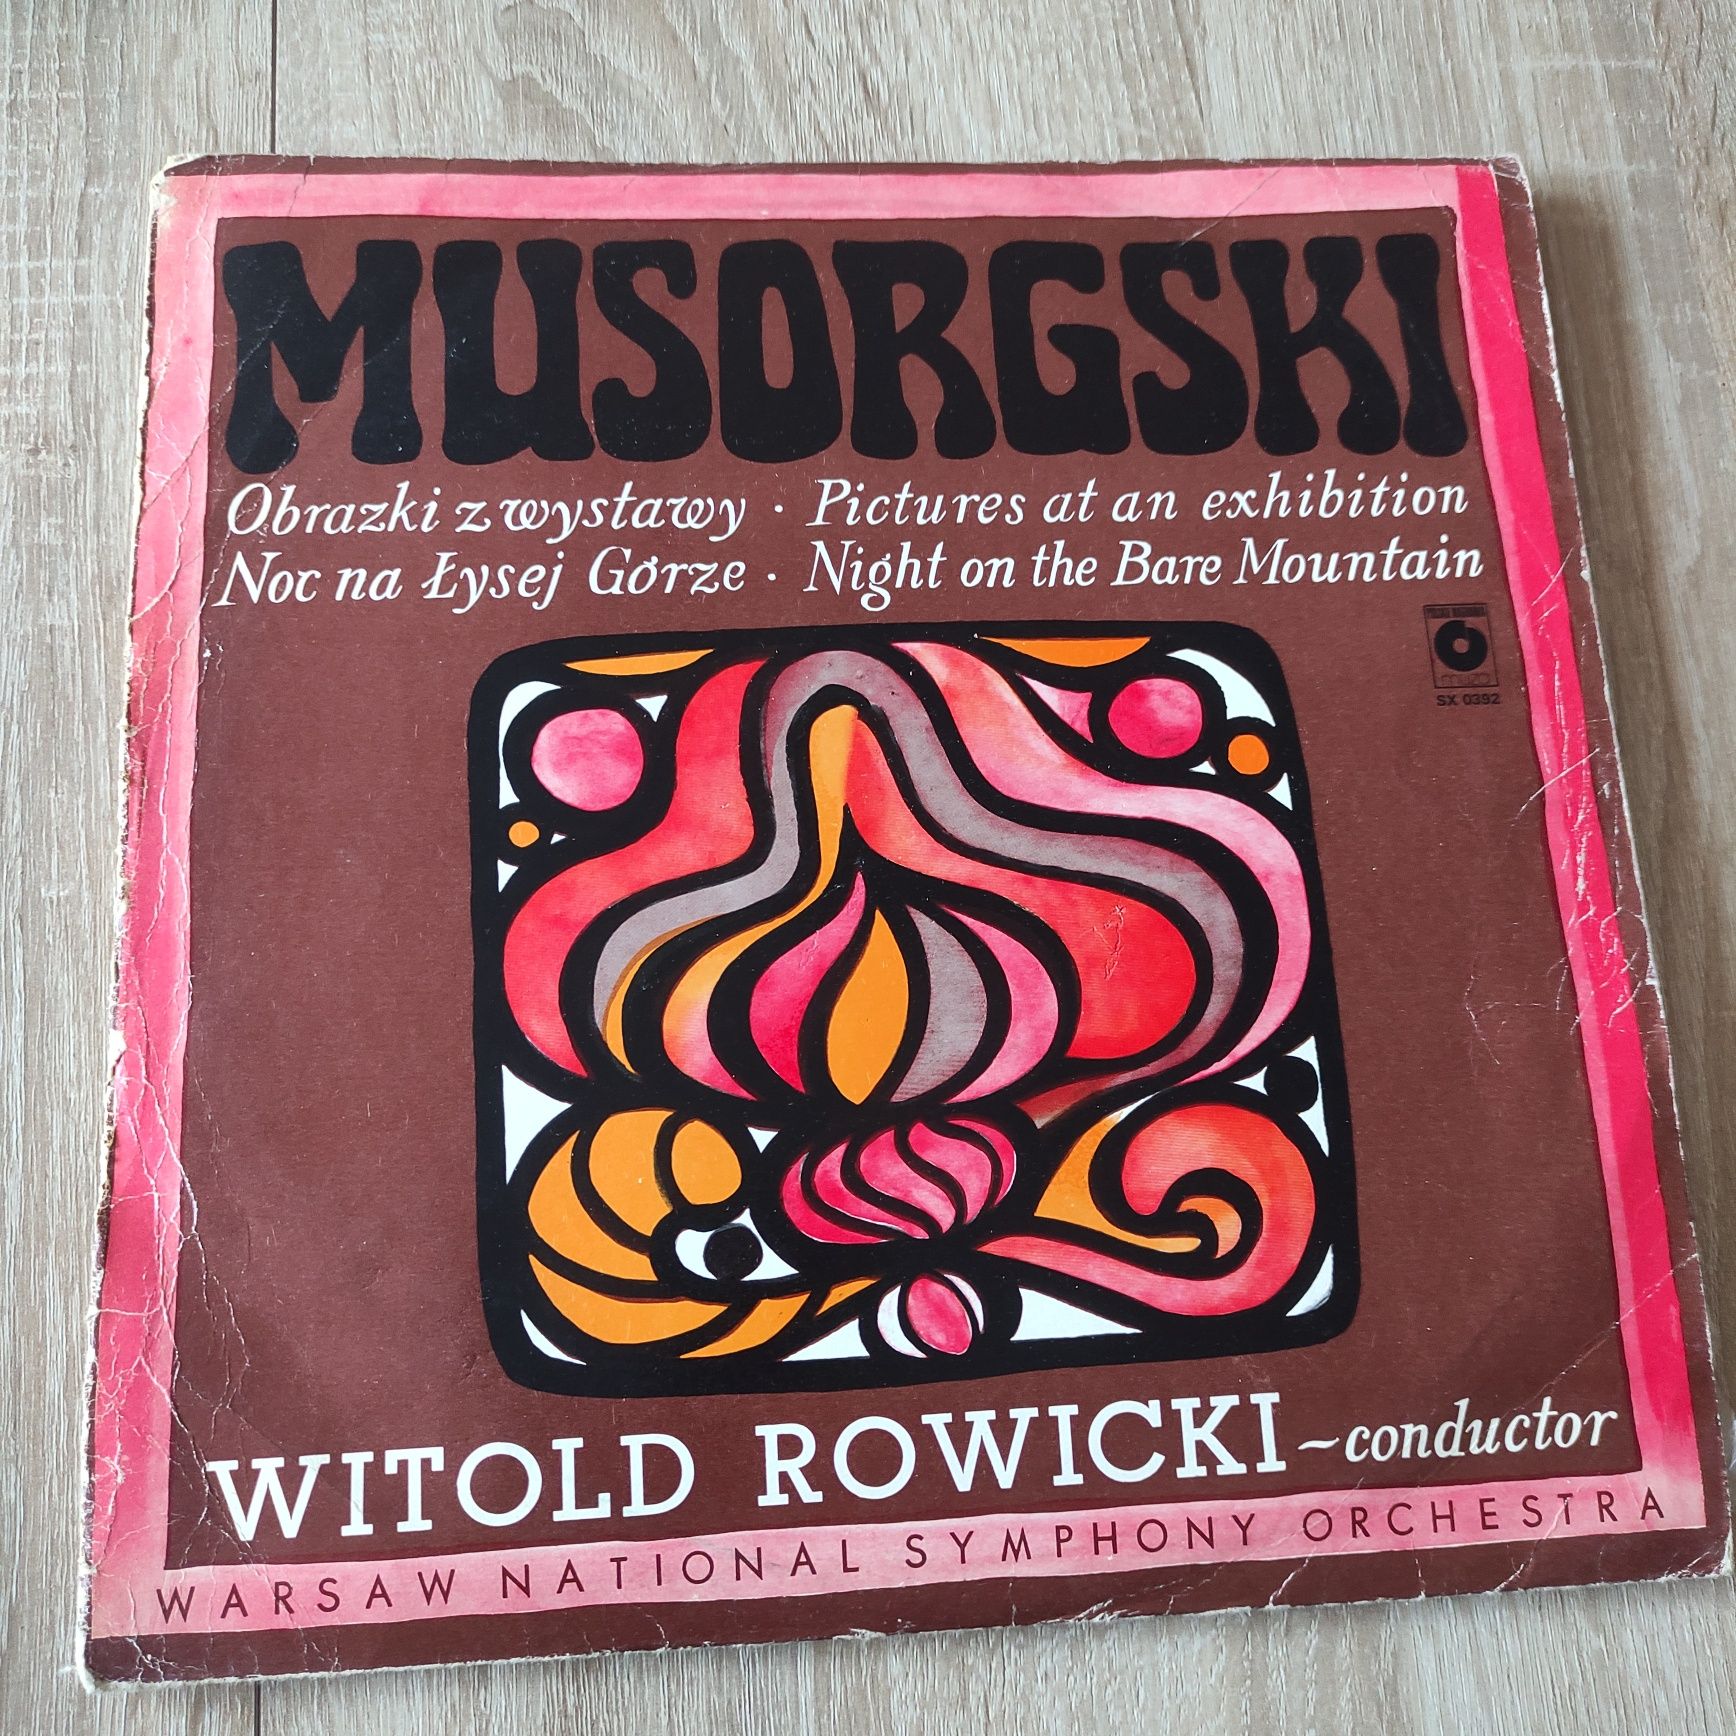 Płyta winylowa Witold Rowicki "Misorgski"